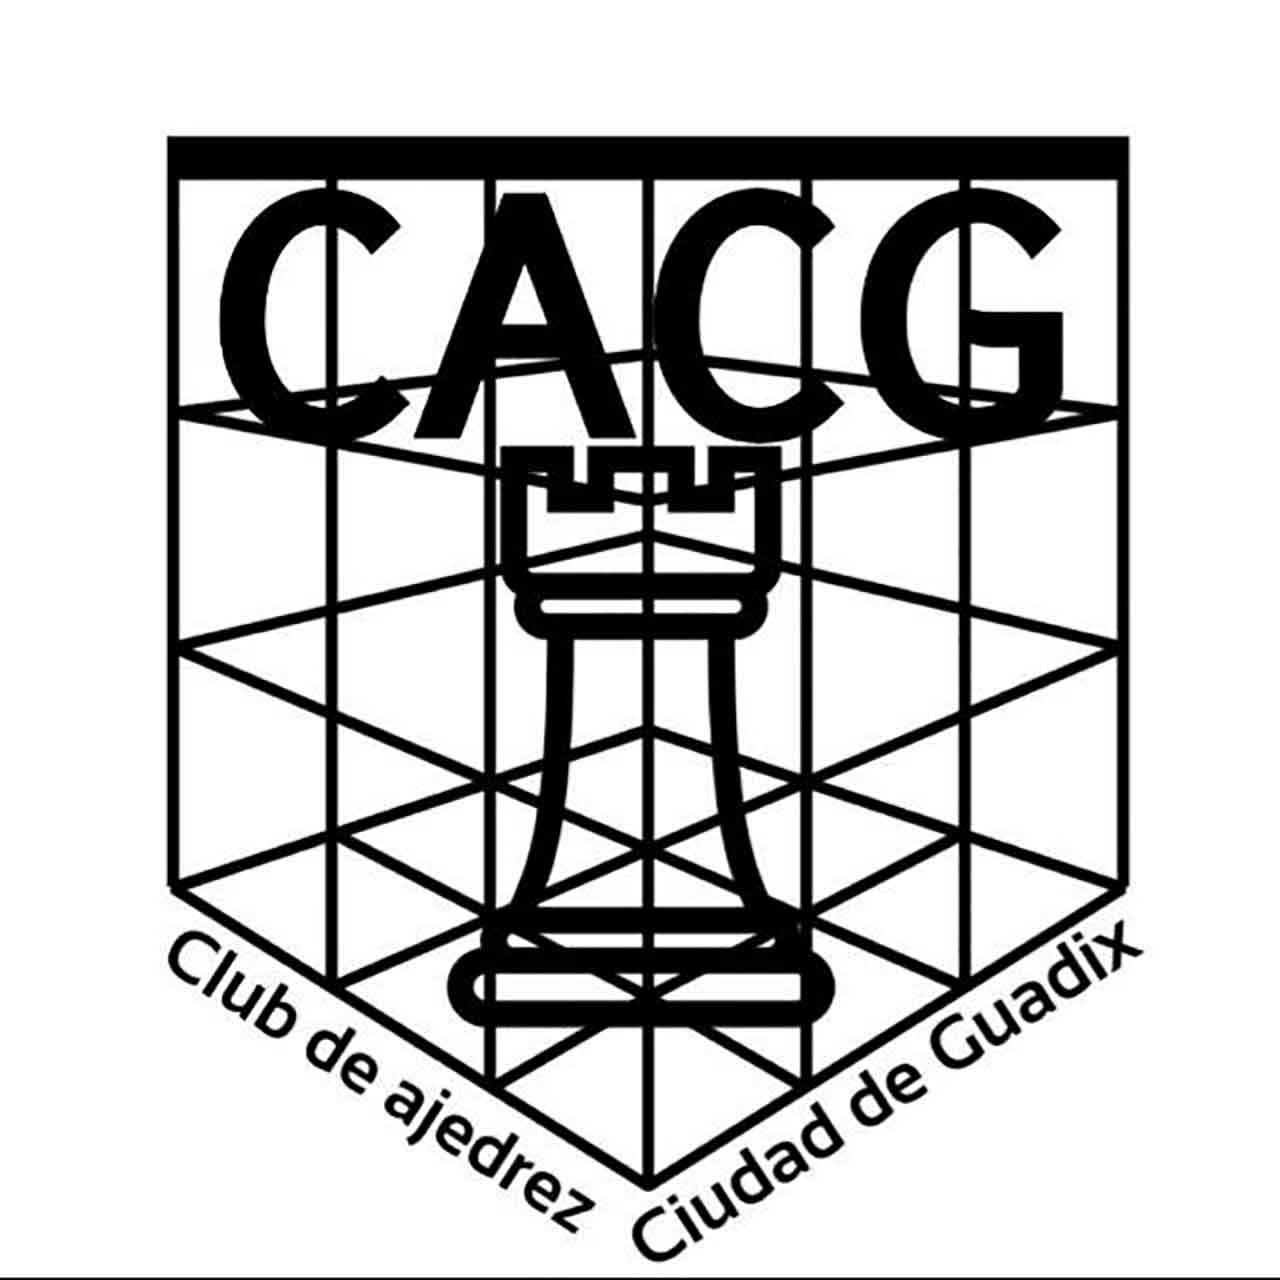 Club de ajedrez Ciudad de Guadix